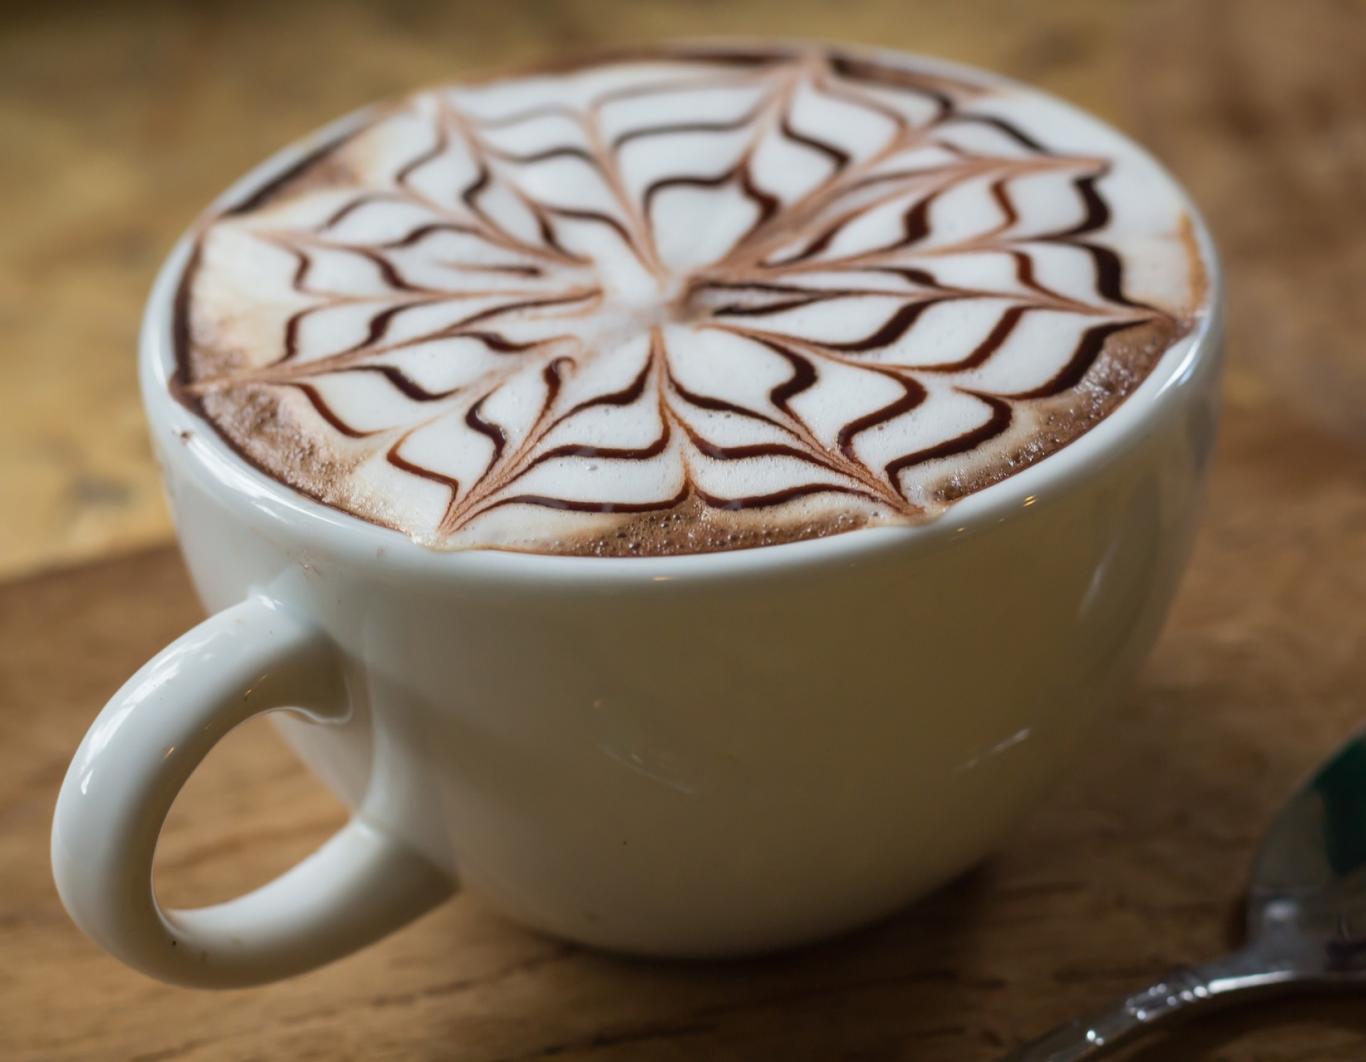 Imagen de una taza de café con espuma de leche decorada con un dibujo